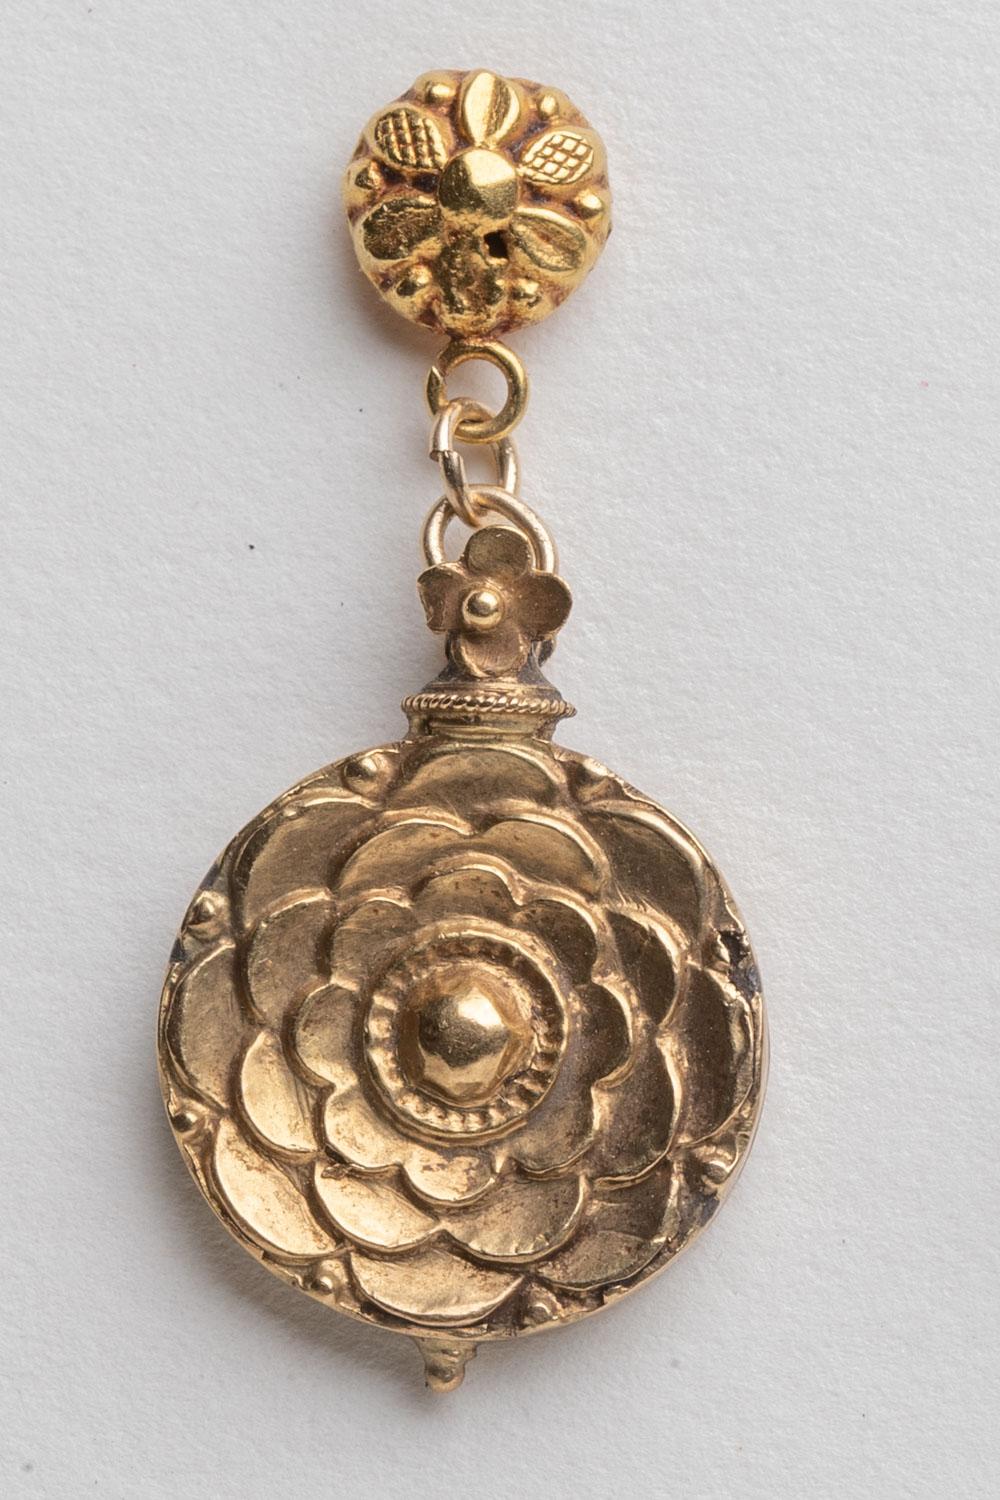 handgegossene, tropfenförmige Ohrringe aus 18 Karat Gold mit einem dezenten Blumenmotiv.  Ursprünglich alte indianische Anhänger von einer Halskette.  Die 18-karätigen Goldstifte sind handgefertigt und für gepiercte Ohren geeignet.  C. 1960.